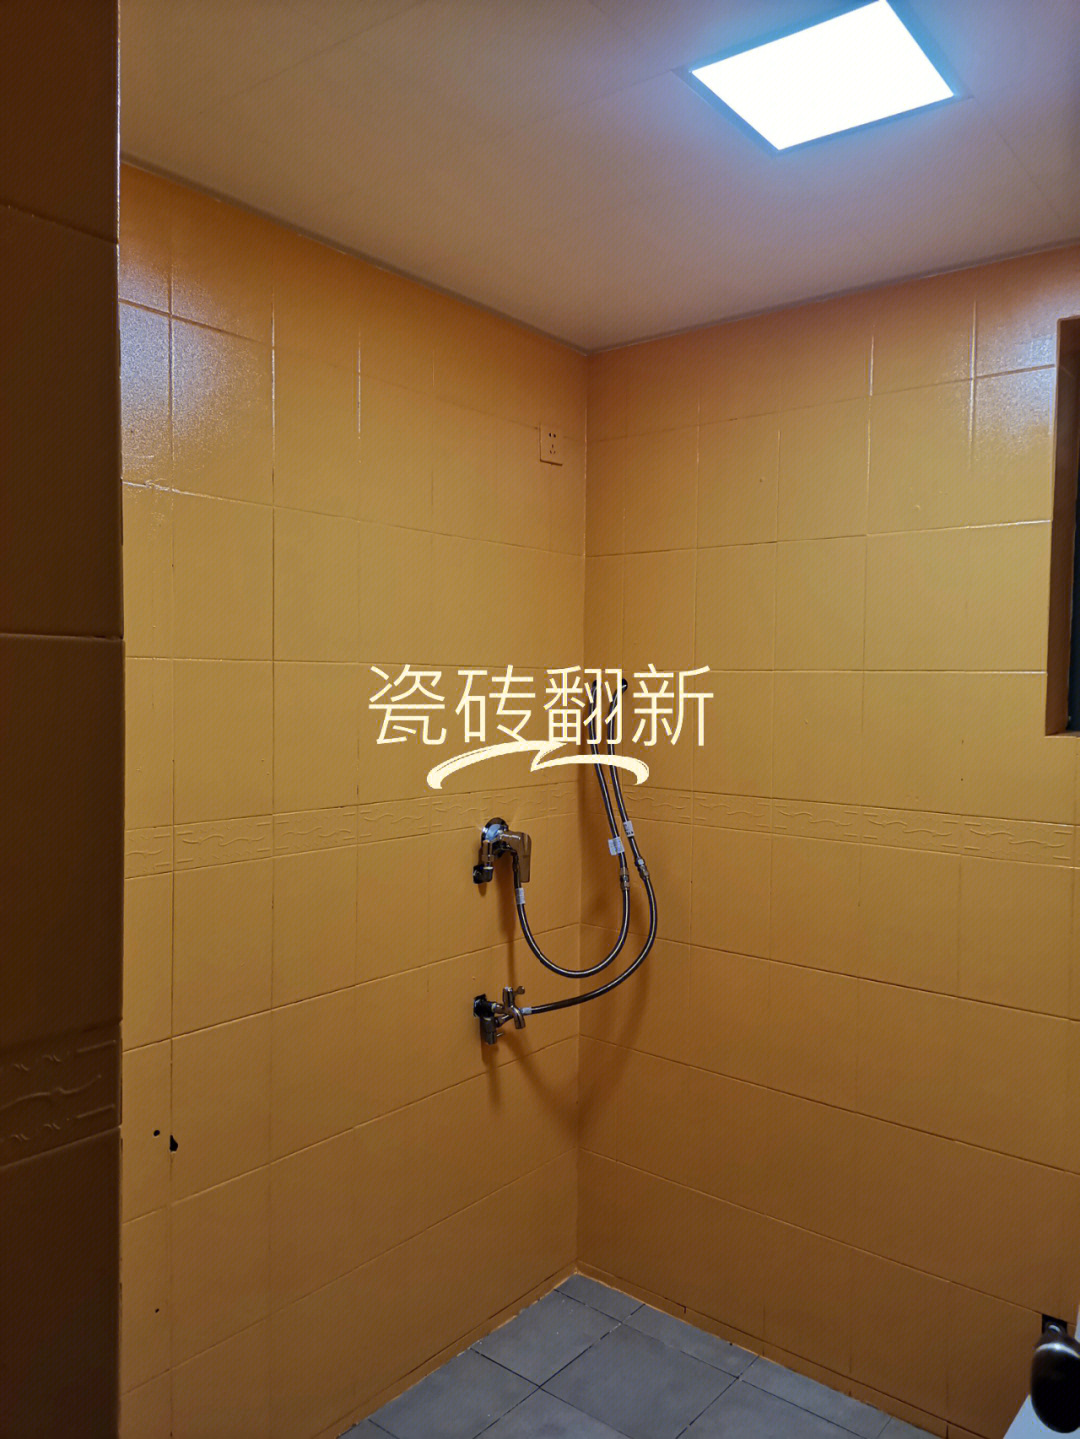 深圳专业师傅施工 瓷砖翻新 墙面刷油漆 旧房翻新 贴地板 水电安装!